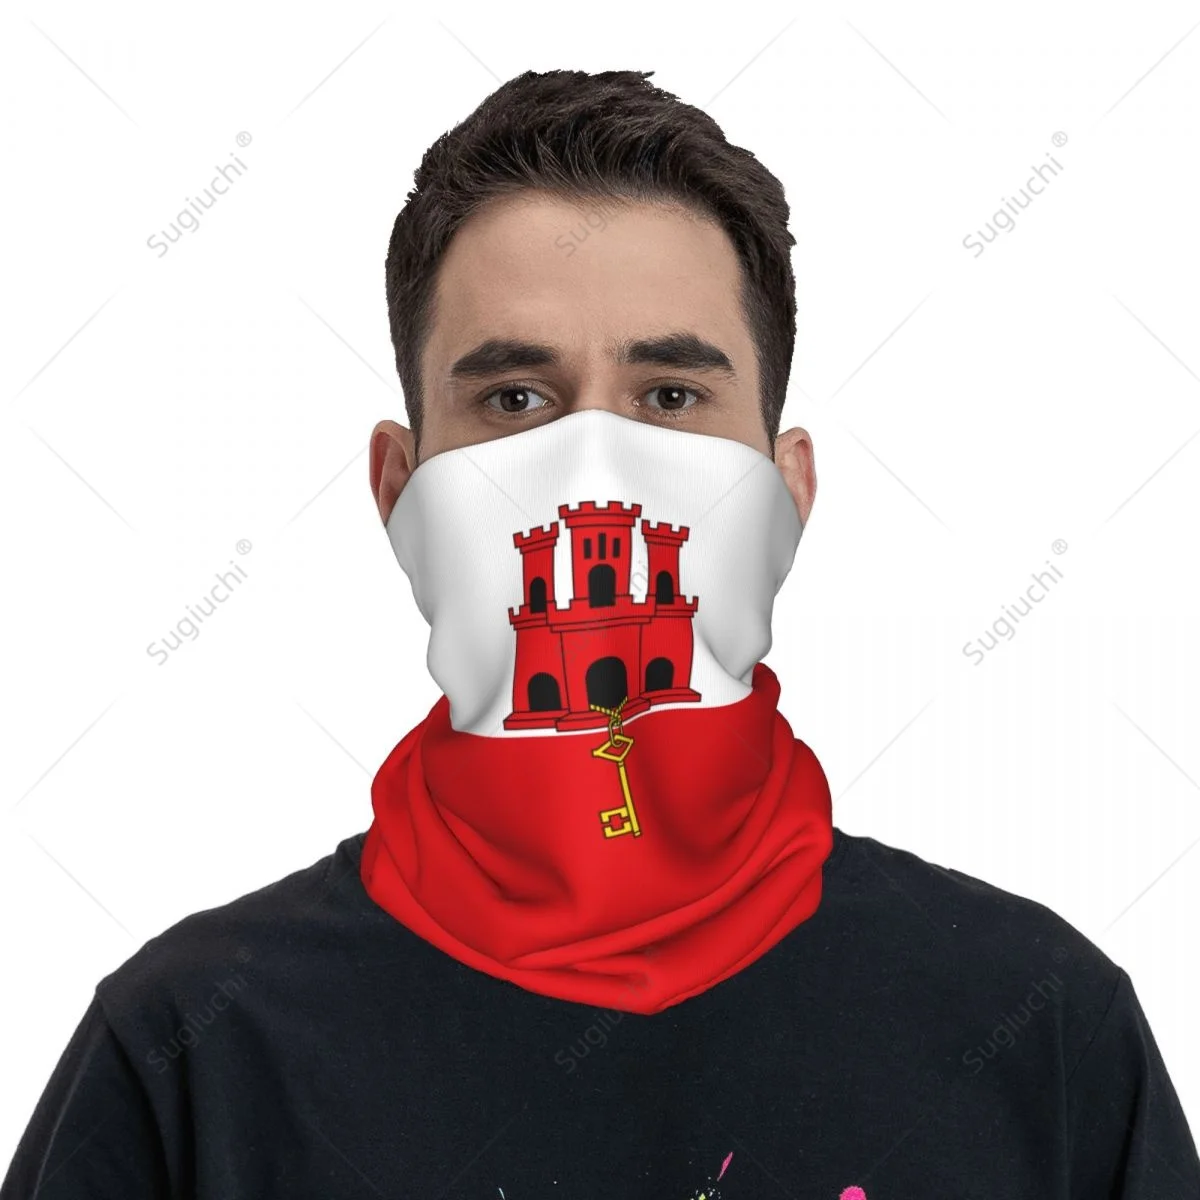 Унисекс Шейный платок с флагом Гибралтара, Шарф, маска для лица, Шарфы, Грелка для шеи, Бесшовная Бандана, Головные уборы, Велоспорт, Пеший туризм